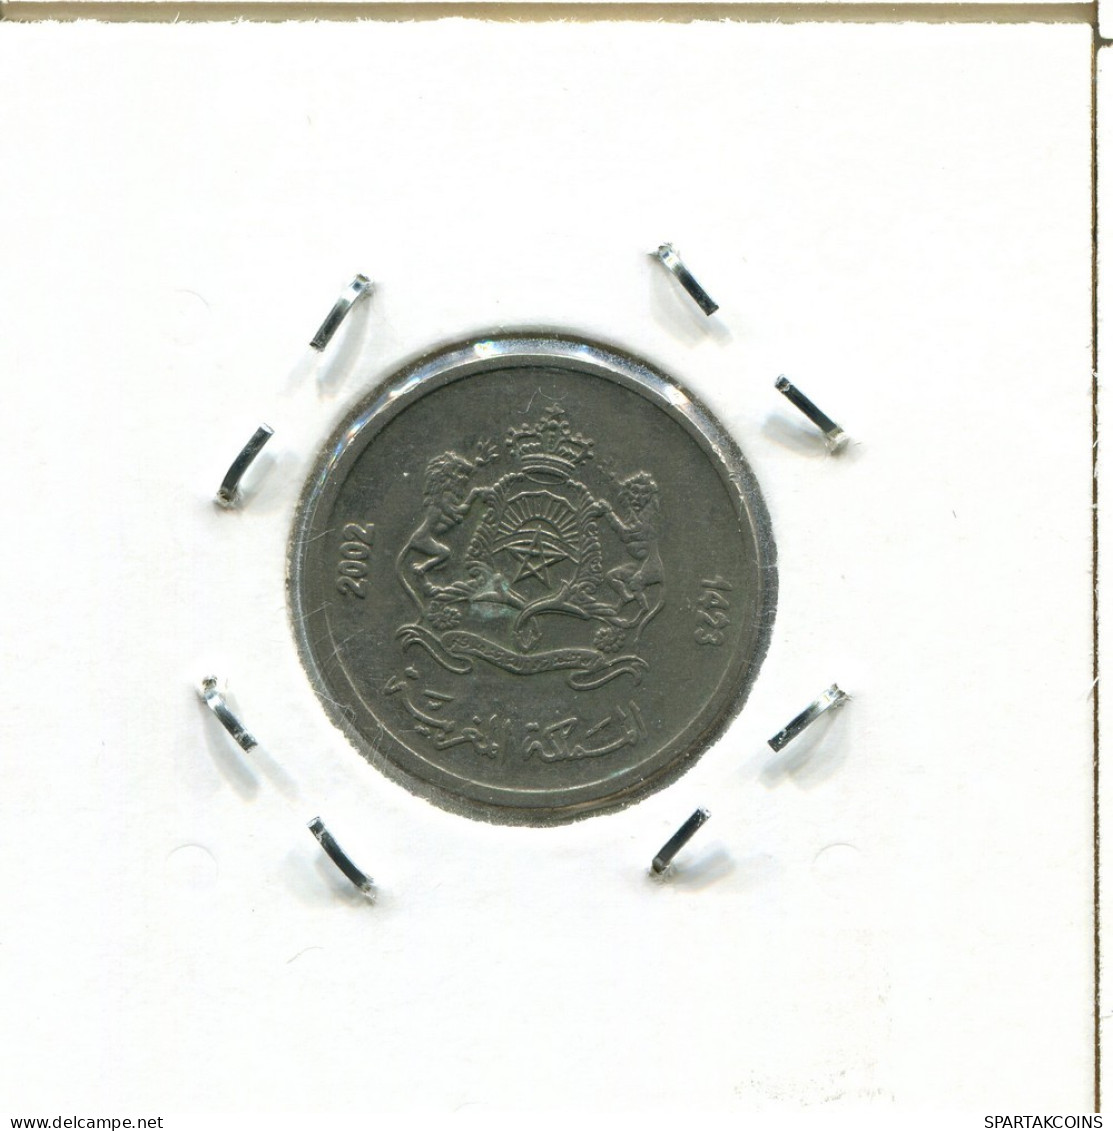 1/2 DIRHAM 2002 MARRUECOS MOROCCO Moneda #AS089.E.A - Maroc